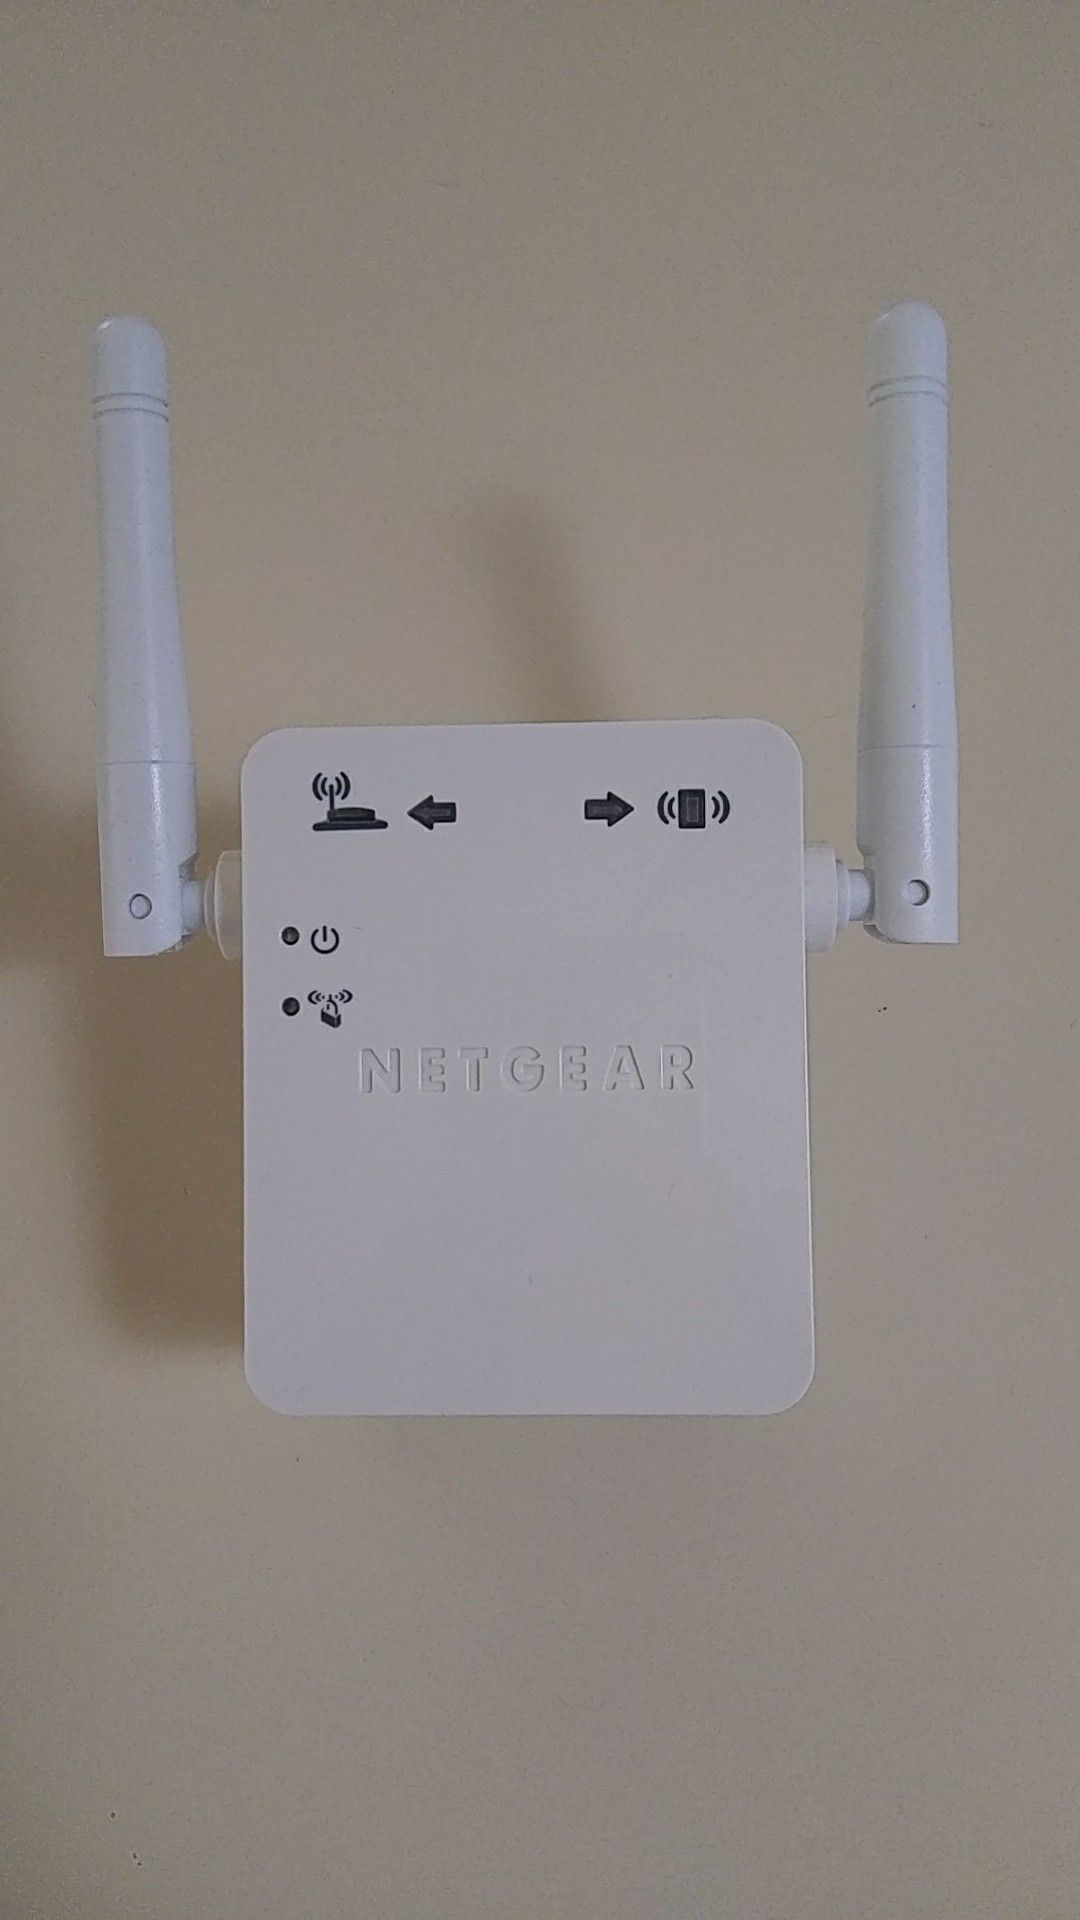 Netgear WiFi extender